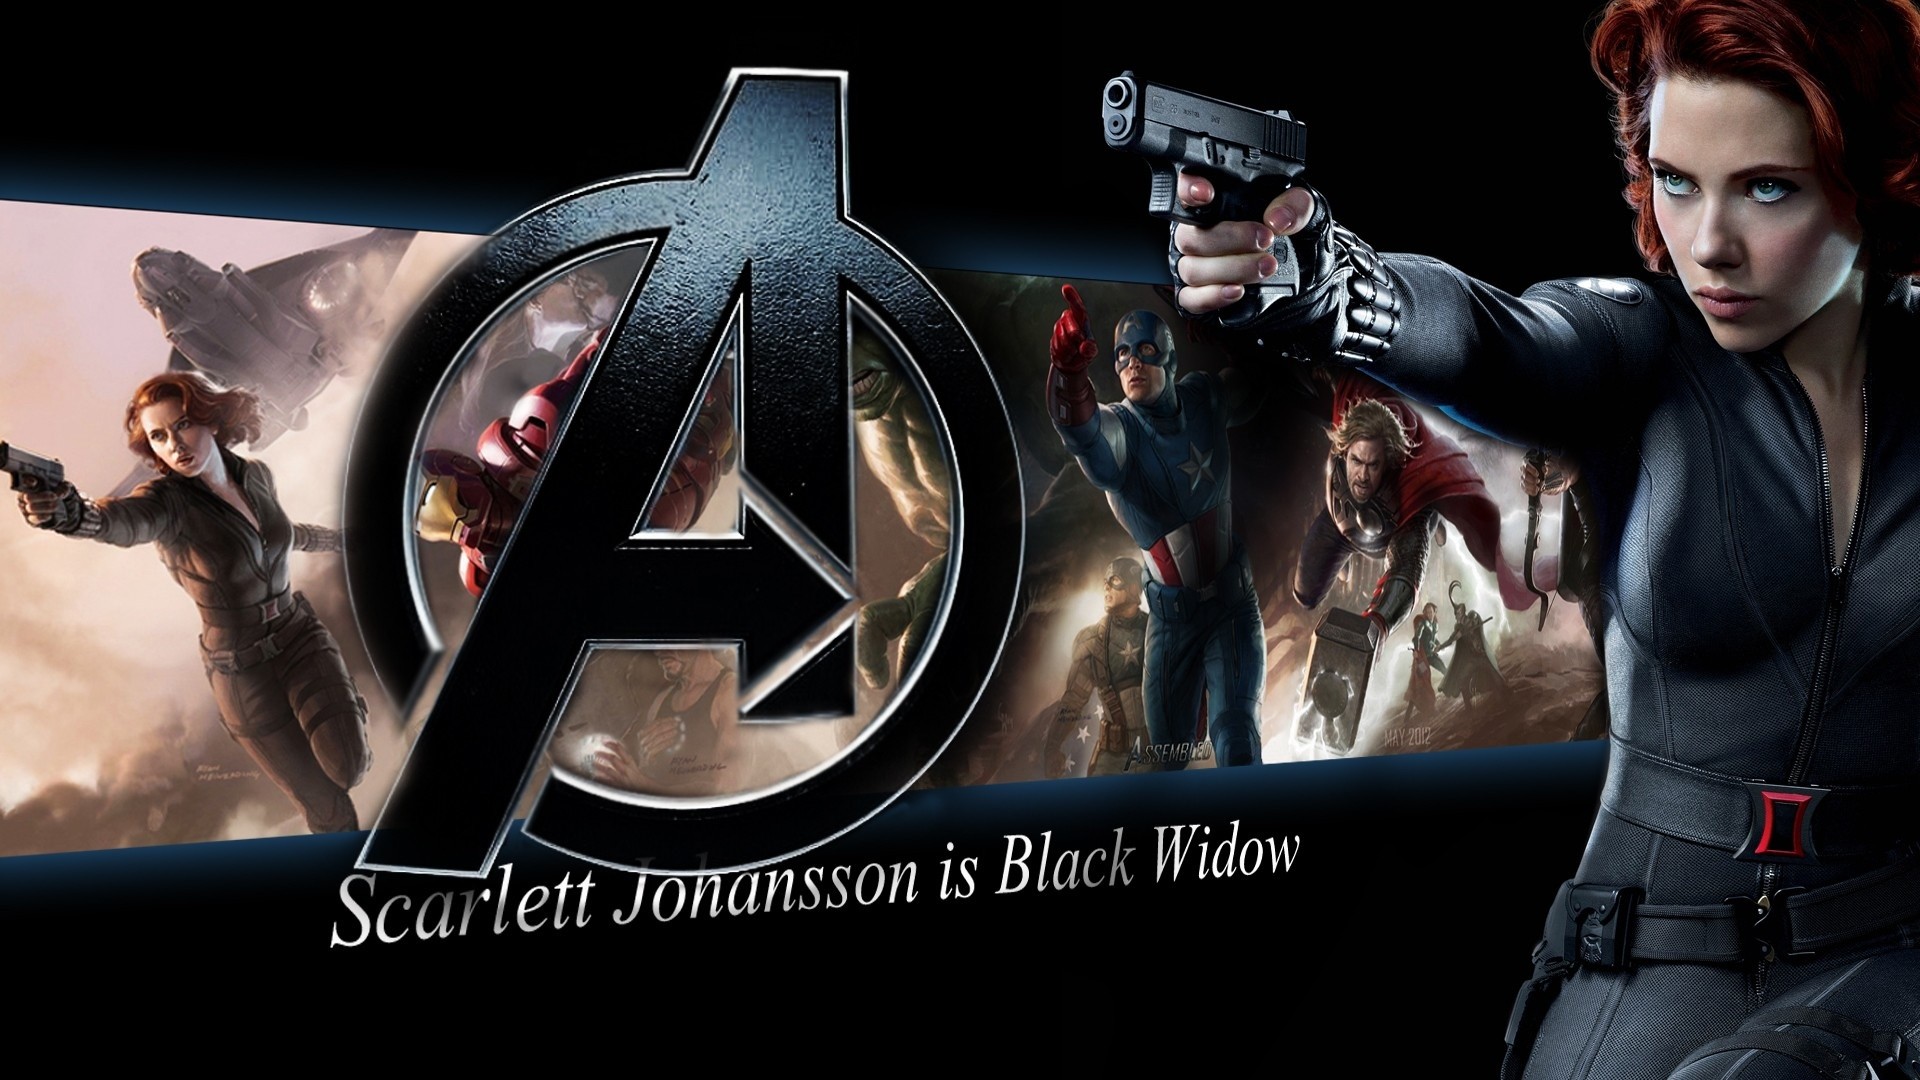 1920x1080 Scarlett Johansson is Black Widow, The Avengers wallpaper  Full HD